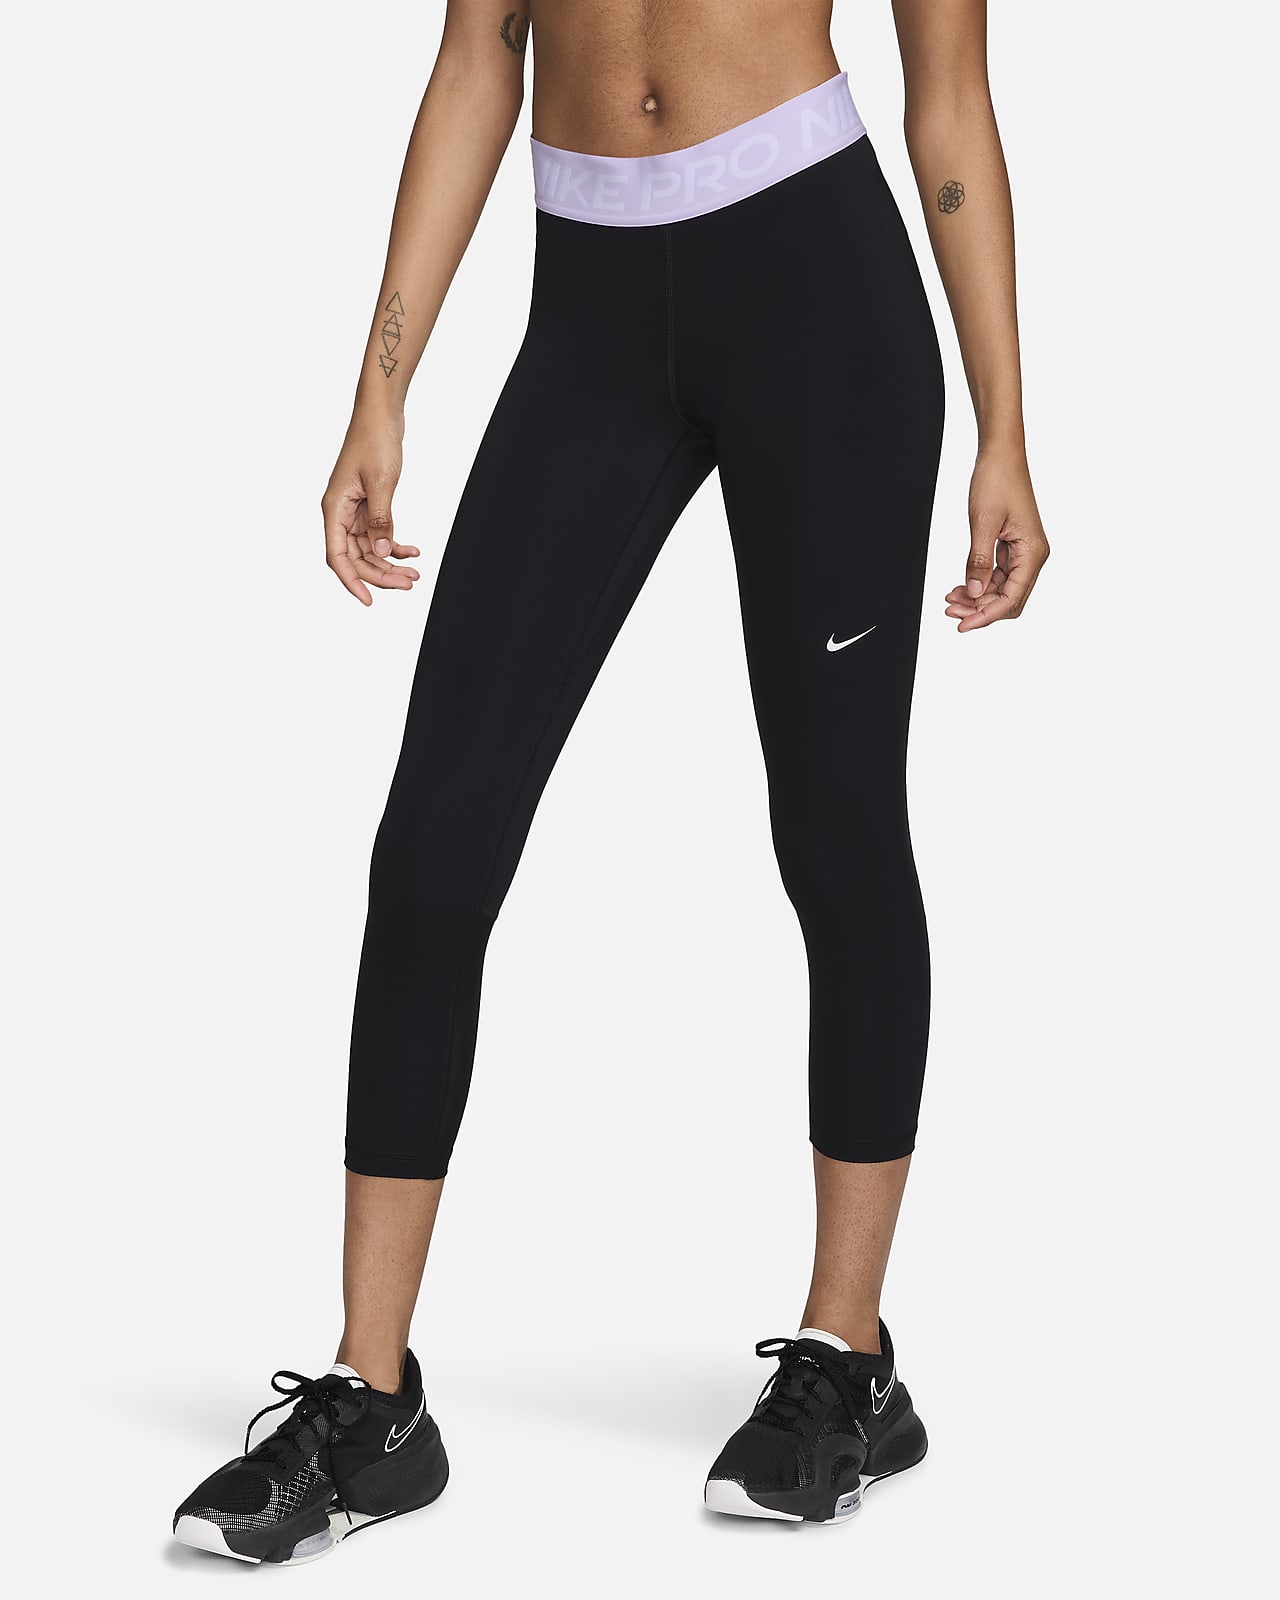 Nike Pro 365 Normal Belli Kısaltılmış File Panelli Kadın Taytı. Nike TR